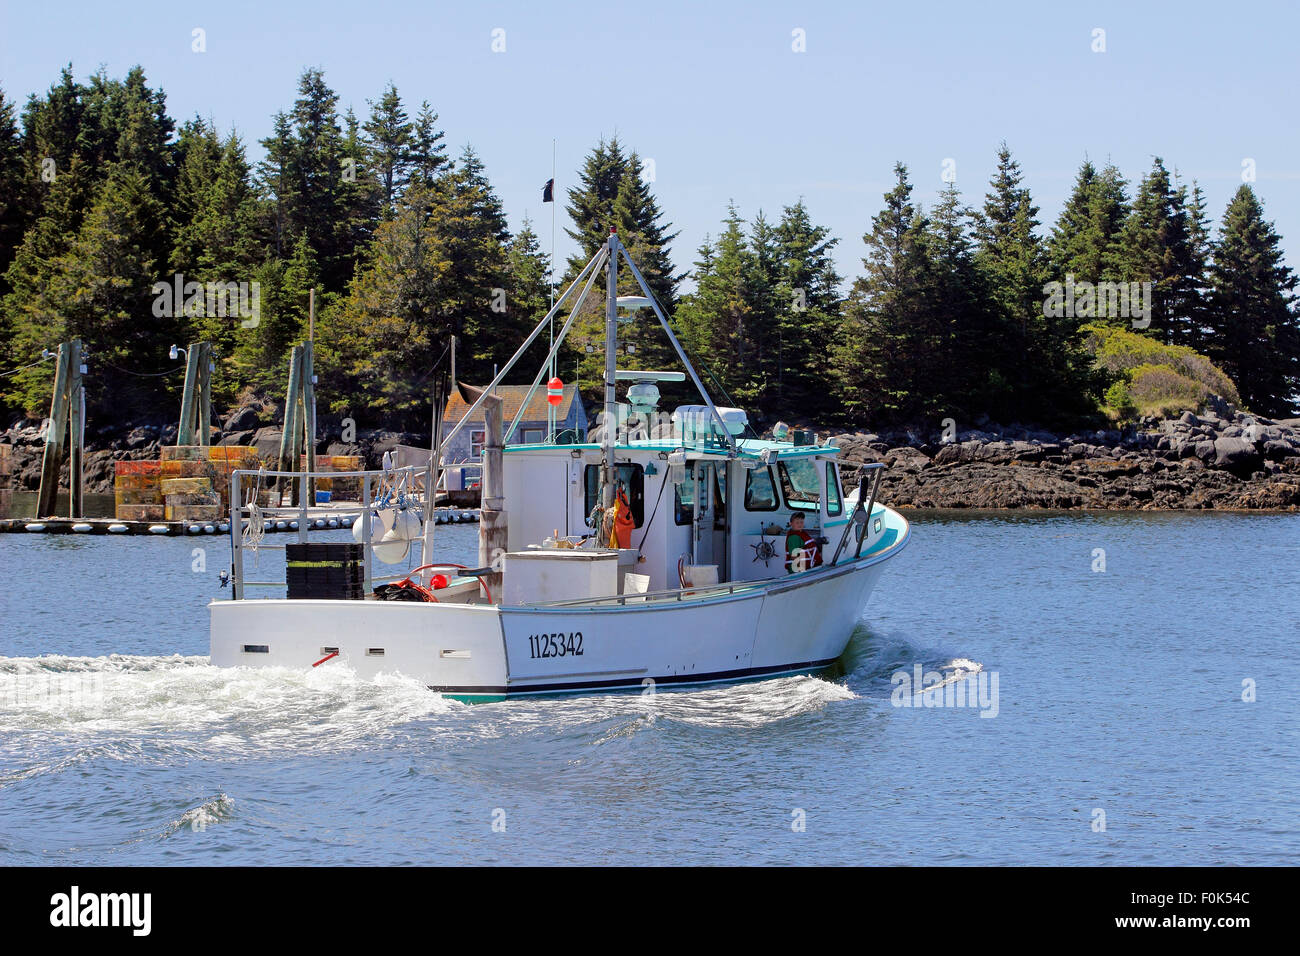 Lobster barche su posti barca in porto a waterfront Vinalhaven Isola Maine New England USA Foto Stock